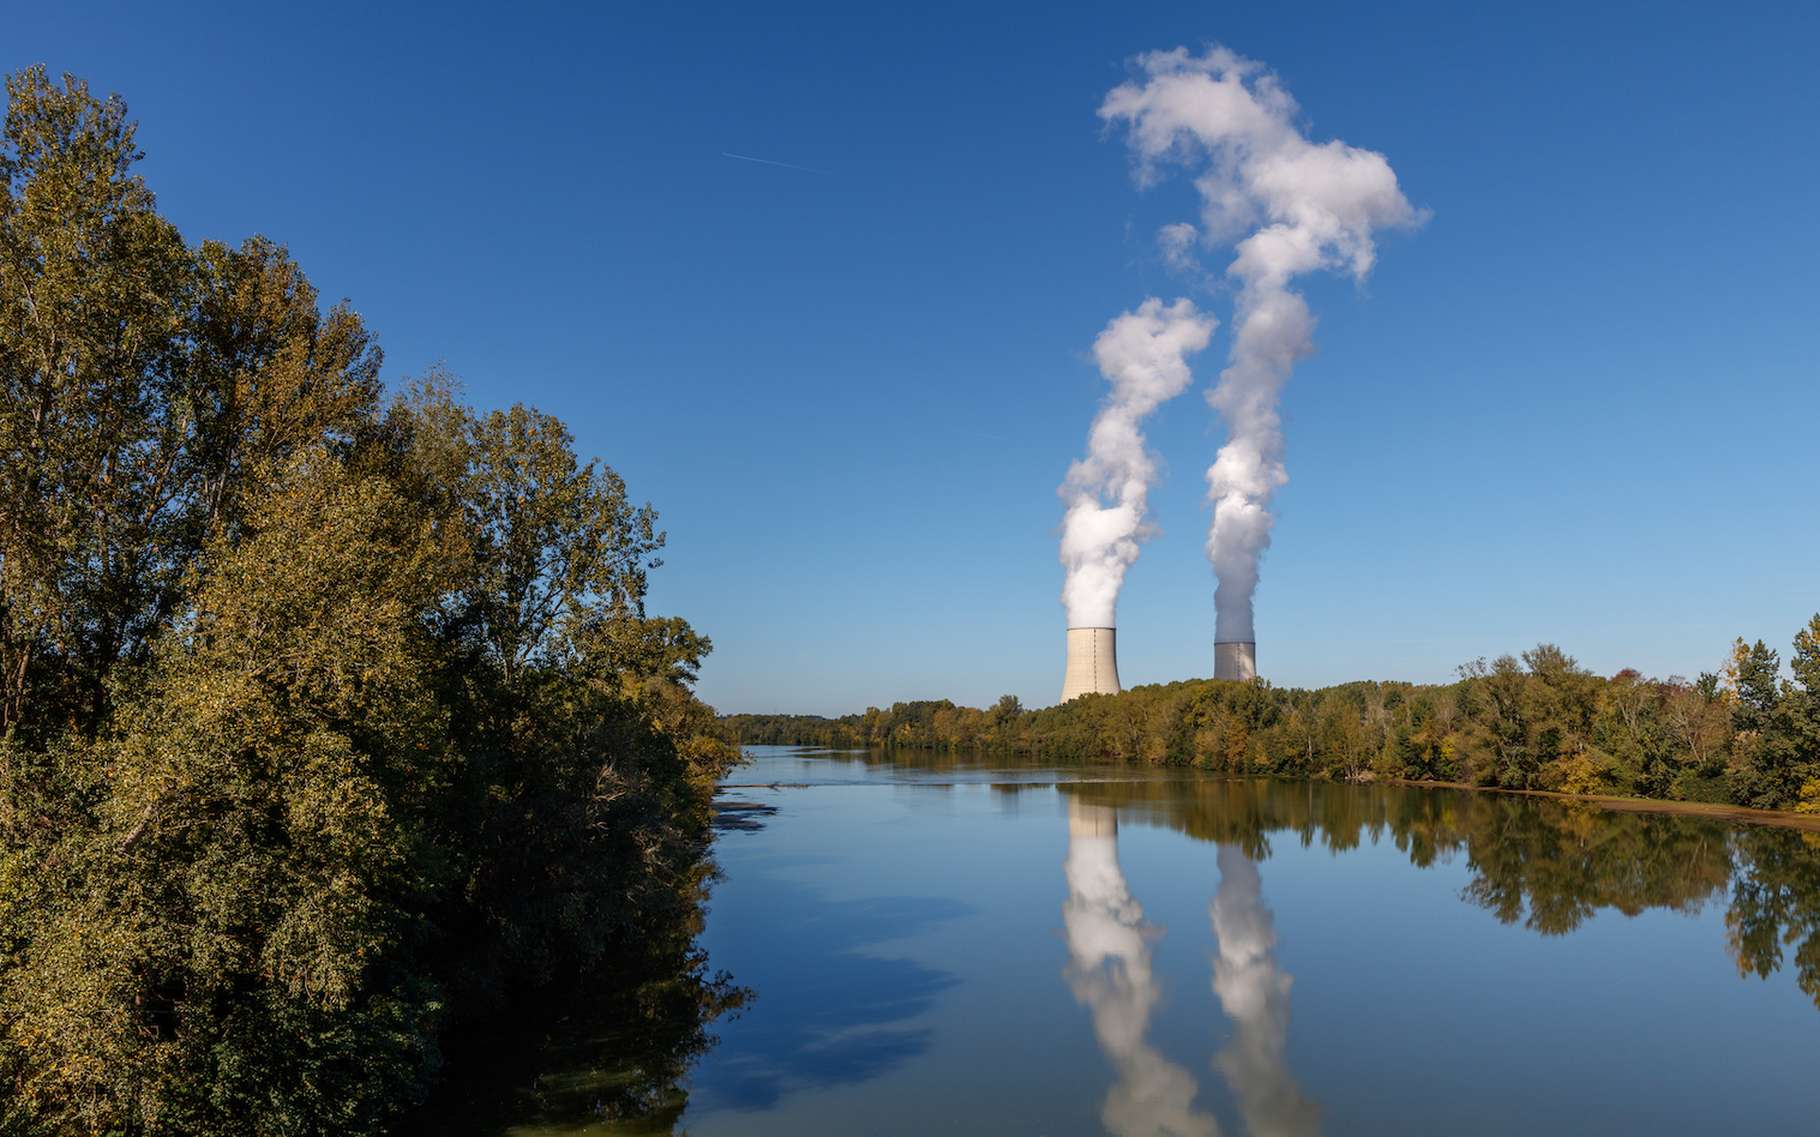 La centrale nucléaire de Golfech est parmi les centrales françaises les plus soumises aux aléas climatiques, sécheresse et canicule. © thomathzac23, Adobe Stock